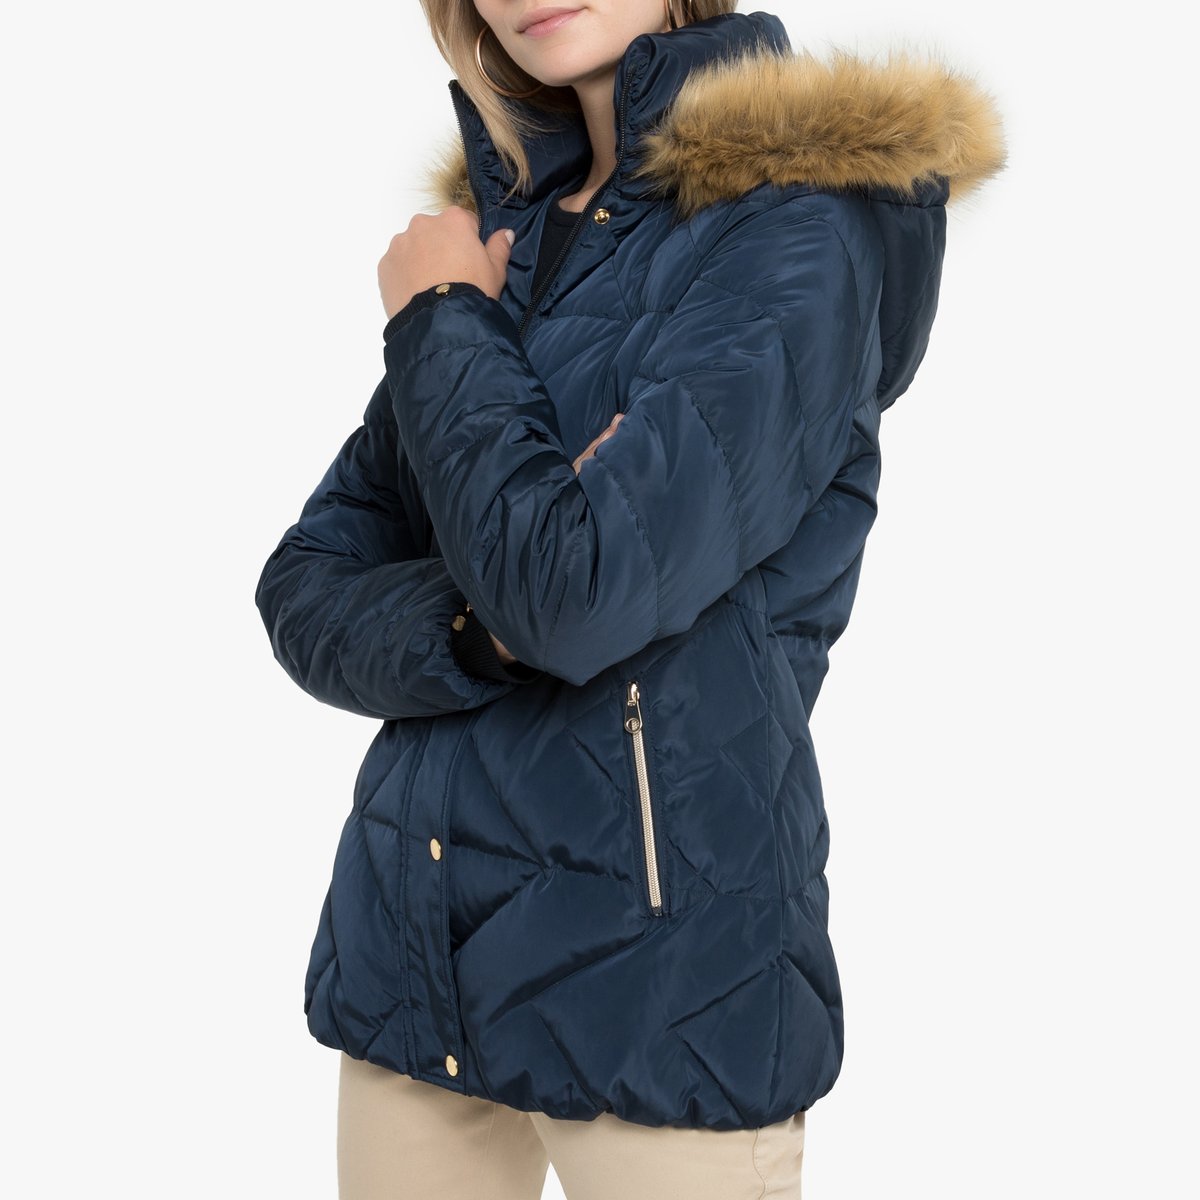 Куртка La Redoute Стеганая с капюшоном зимняя 52 (FR) - 58 (RUS) синий, размер 52 (FR) - 58 (RUS) Стеганая с капюшоном зимняя 52 (FR) - 58 (RUS) синий - фото 1